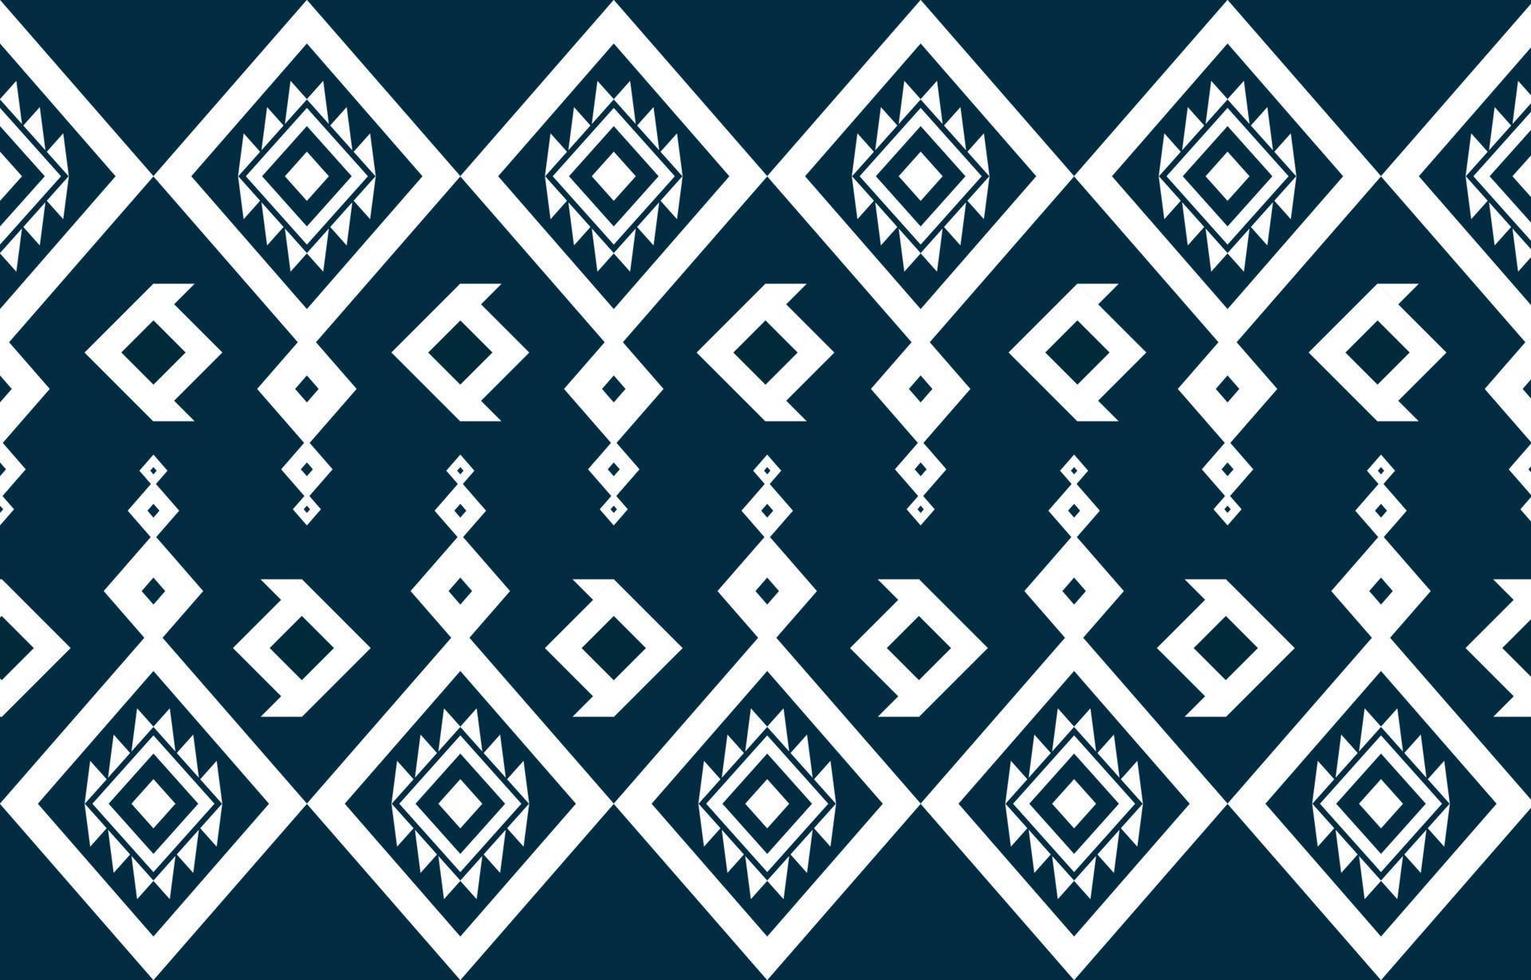 diseño de patrón geométrico étnico americano abstracto azul y blanco para fondo o papel tapiz. Ilustración de vector de patrón de tela